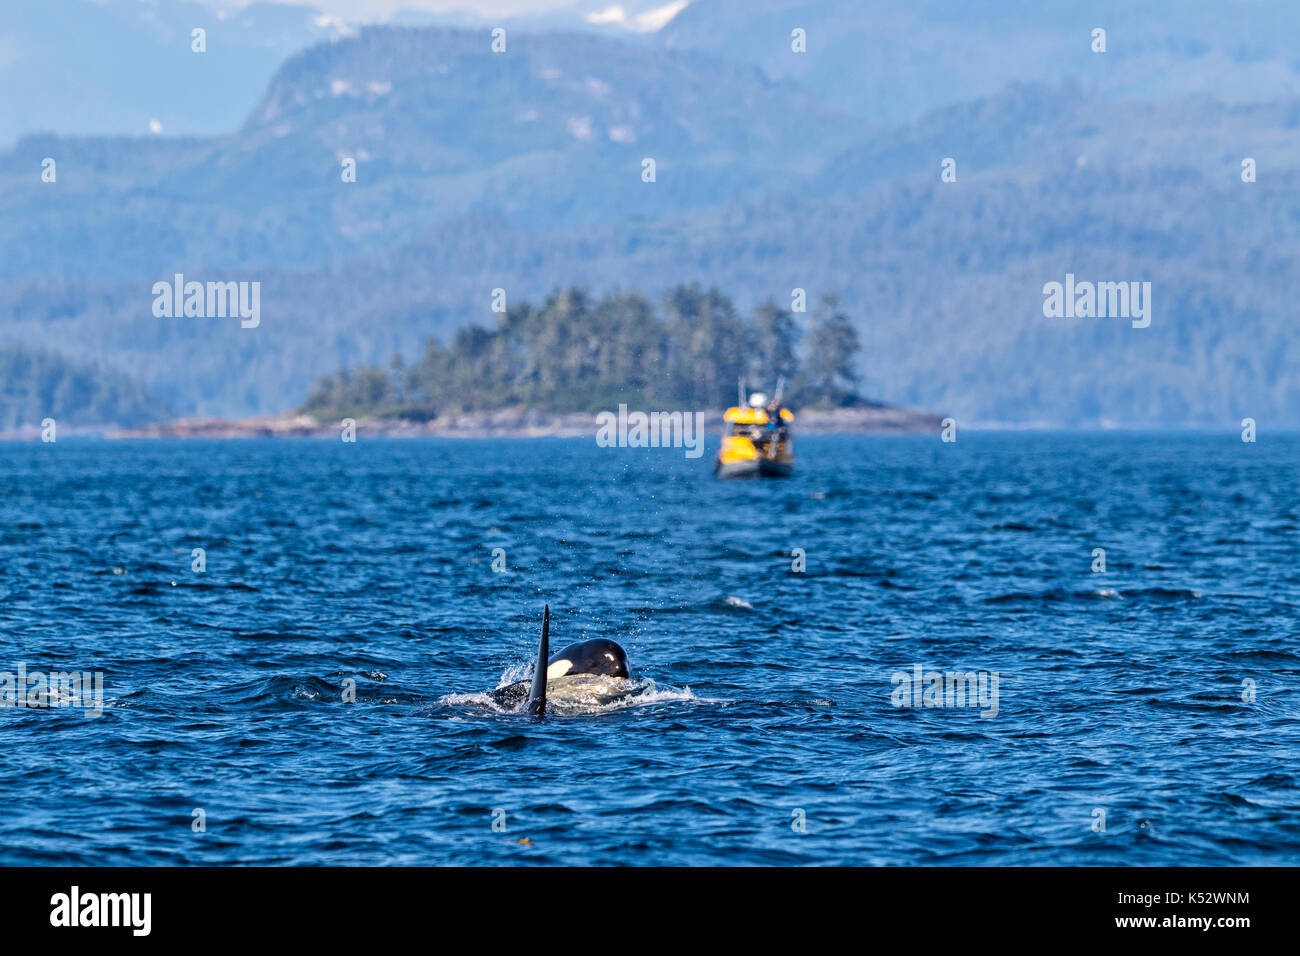 Deux épaulards surfacing en face d'un petit bateau de l'écotourisme dans le détroit de la Reine-Charlotte au large de l'île de Vancouver, Colombie-Britannique, Canada Banque D'Images